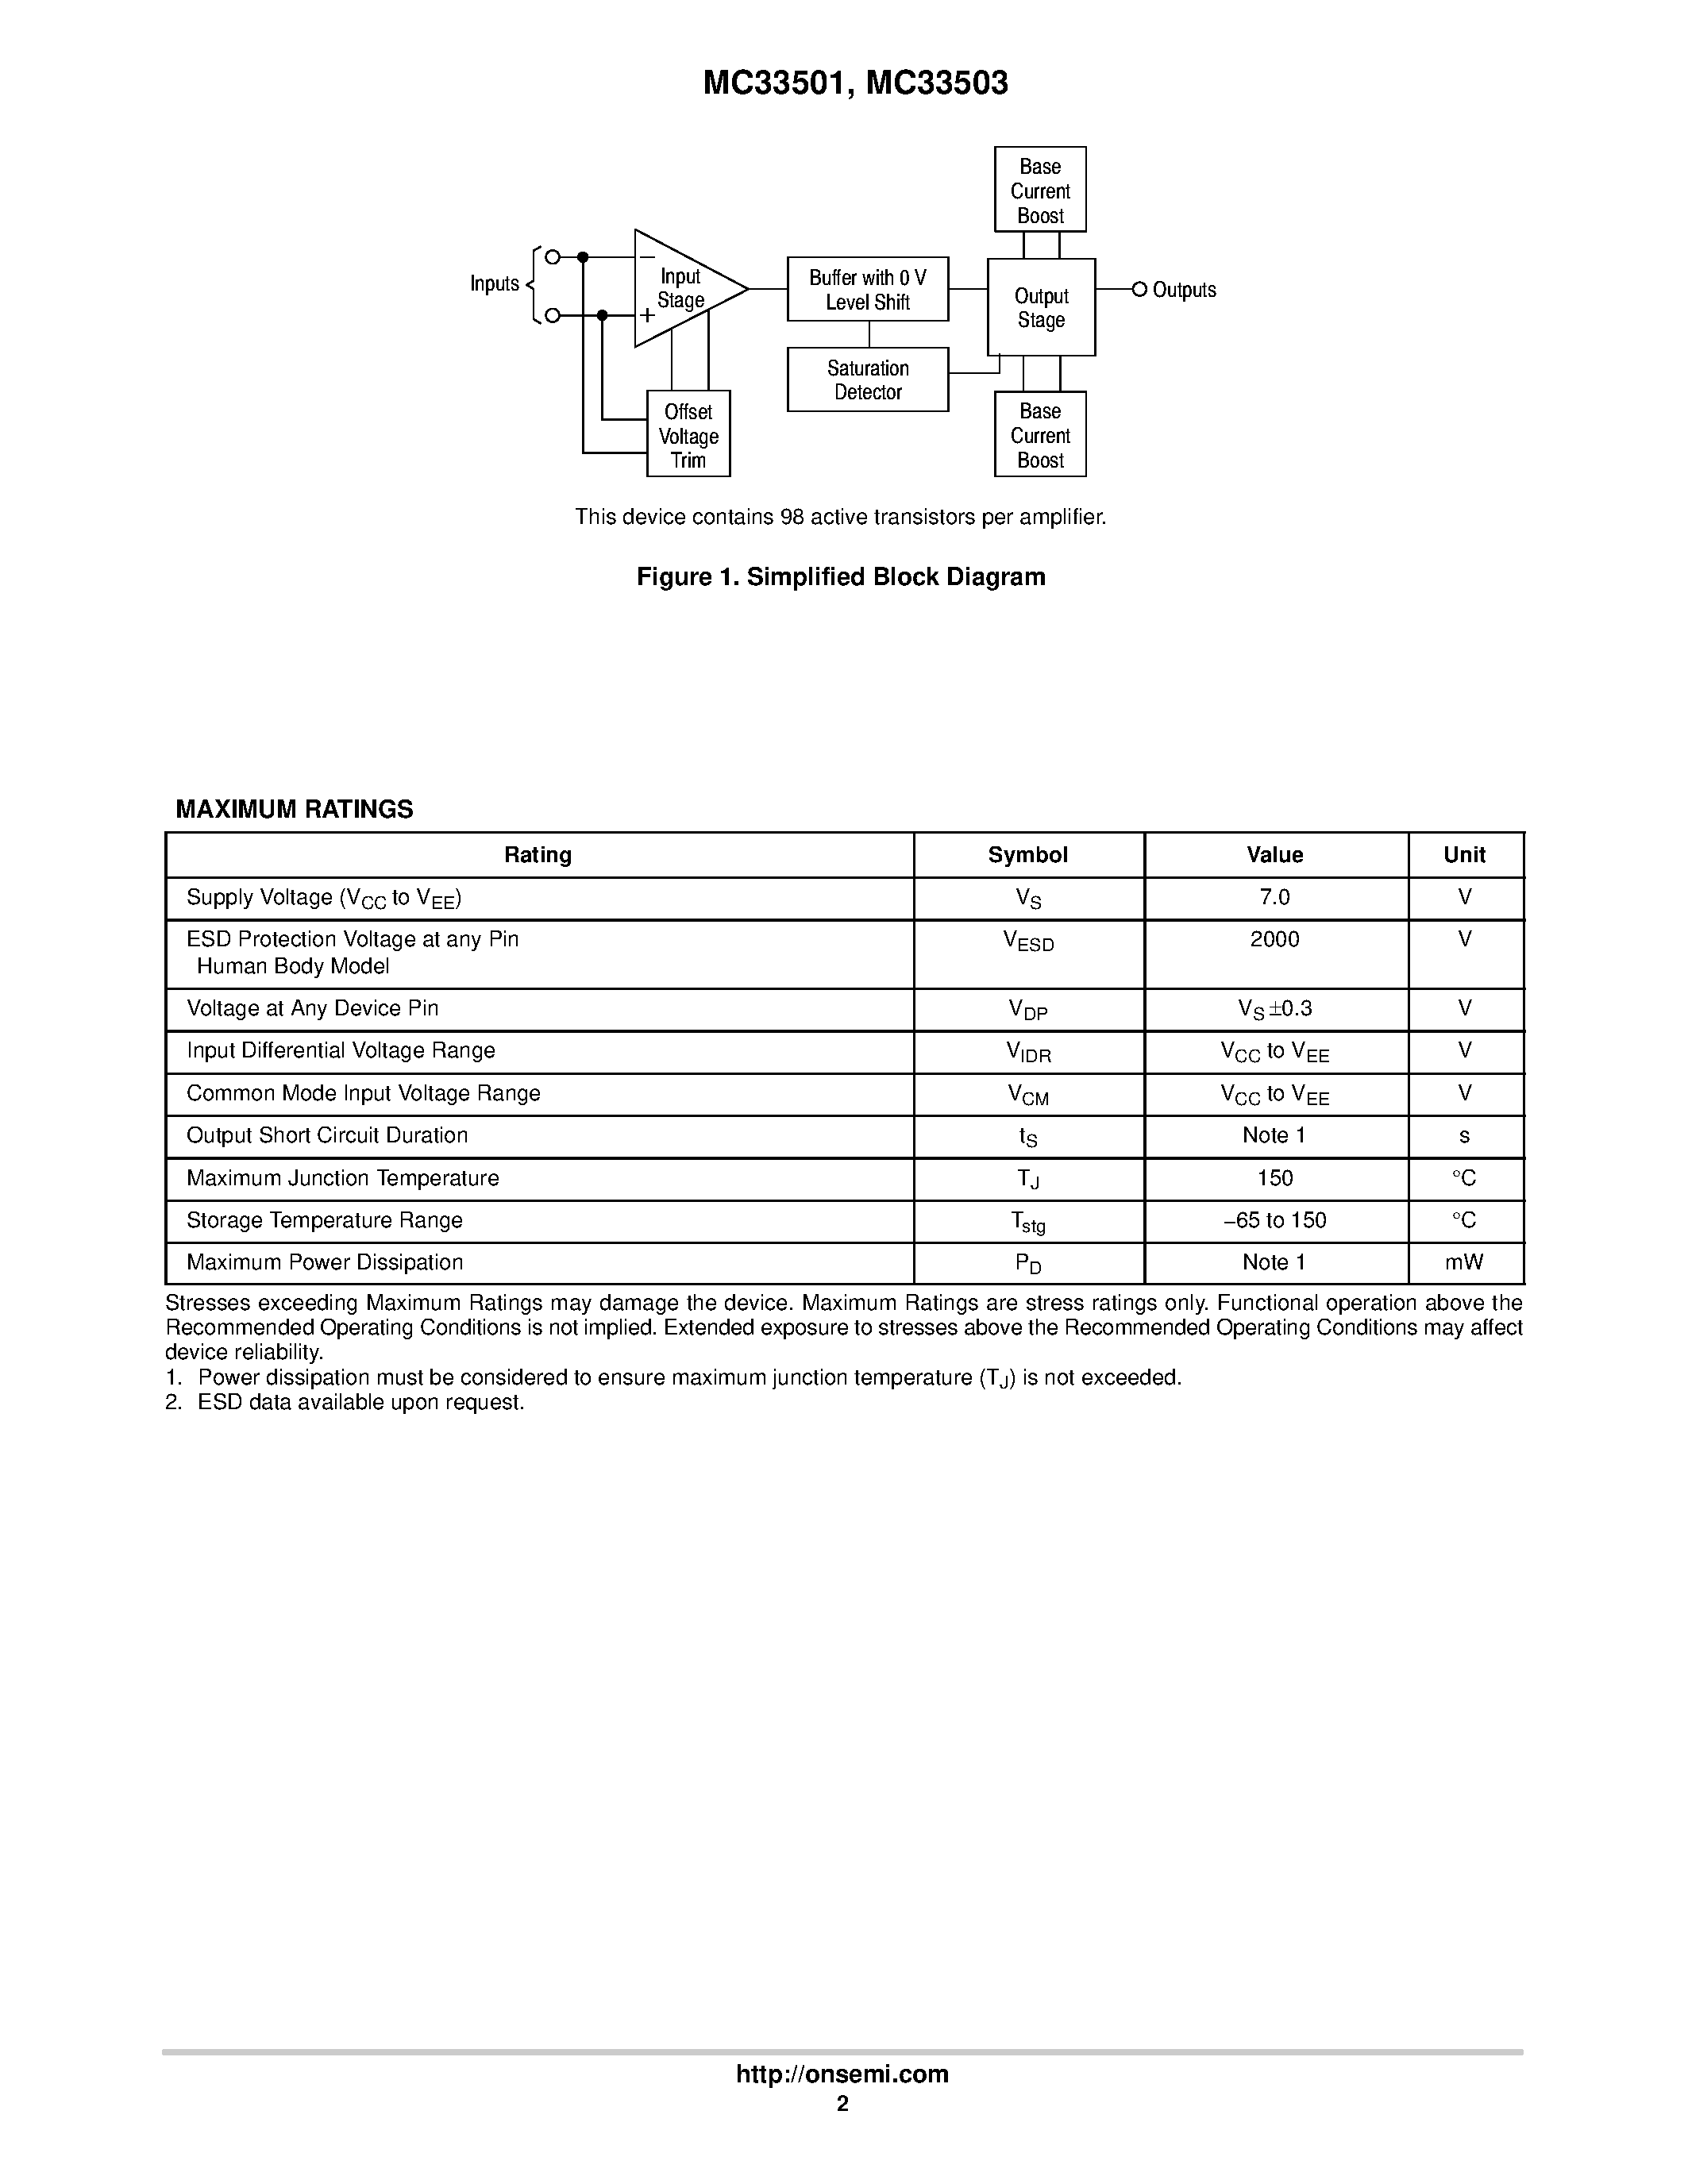 Даташит MC33501 - (MC33501 / MC33503) Single Operational Amplifiers страница 2